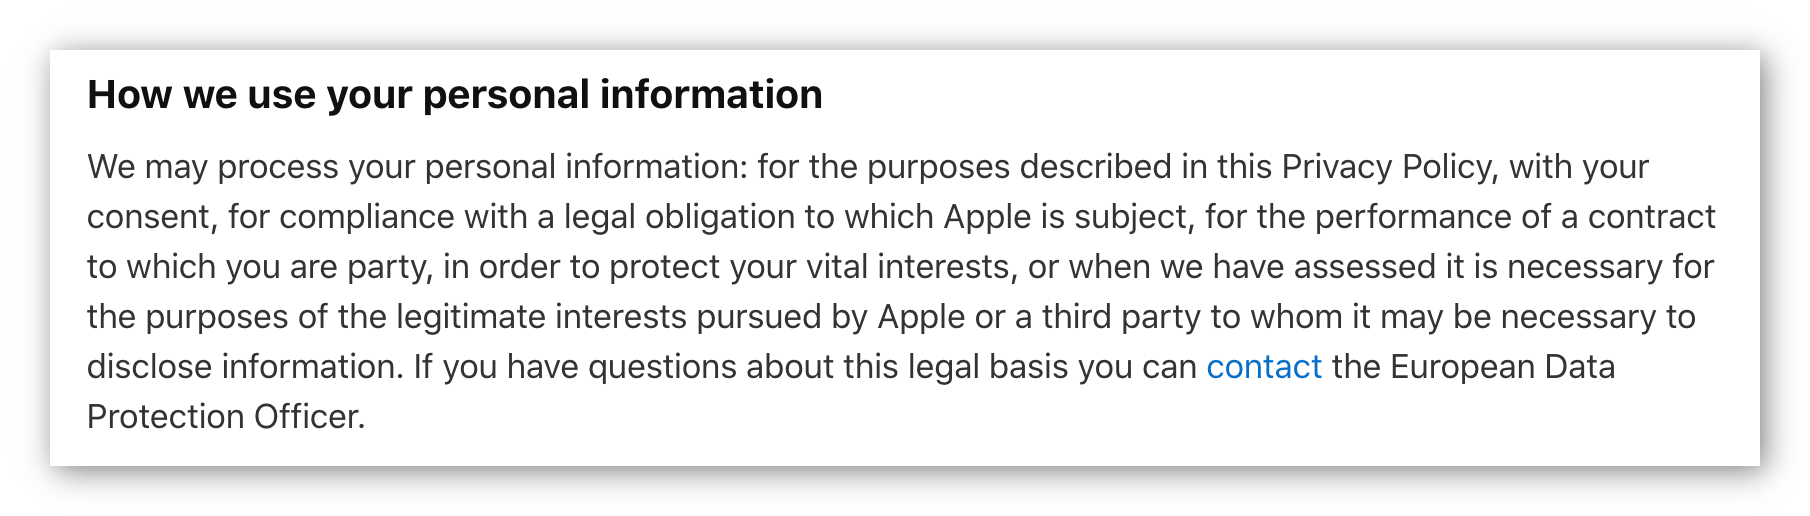 Zrzut ekranu z polityką prywatności Apple